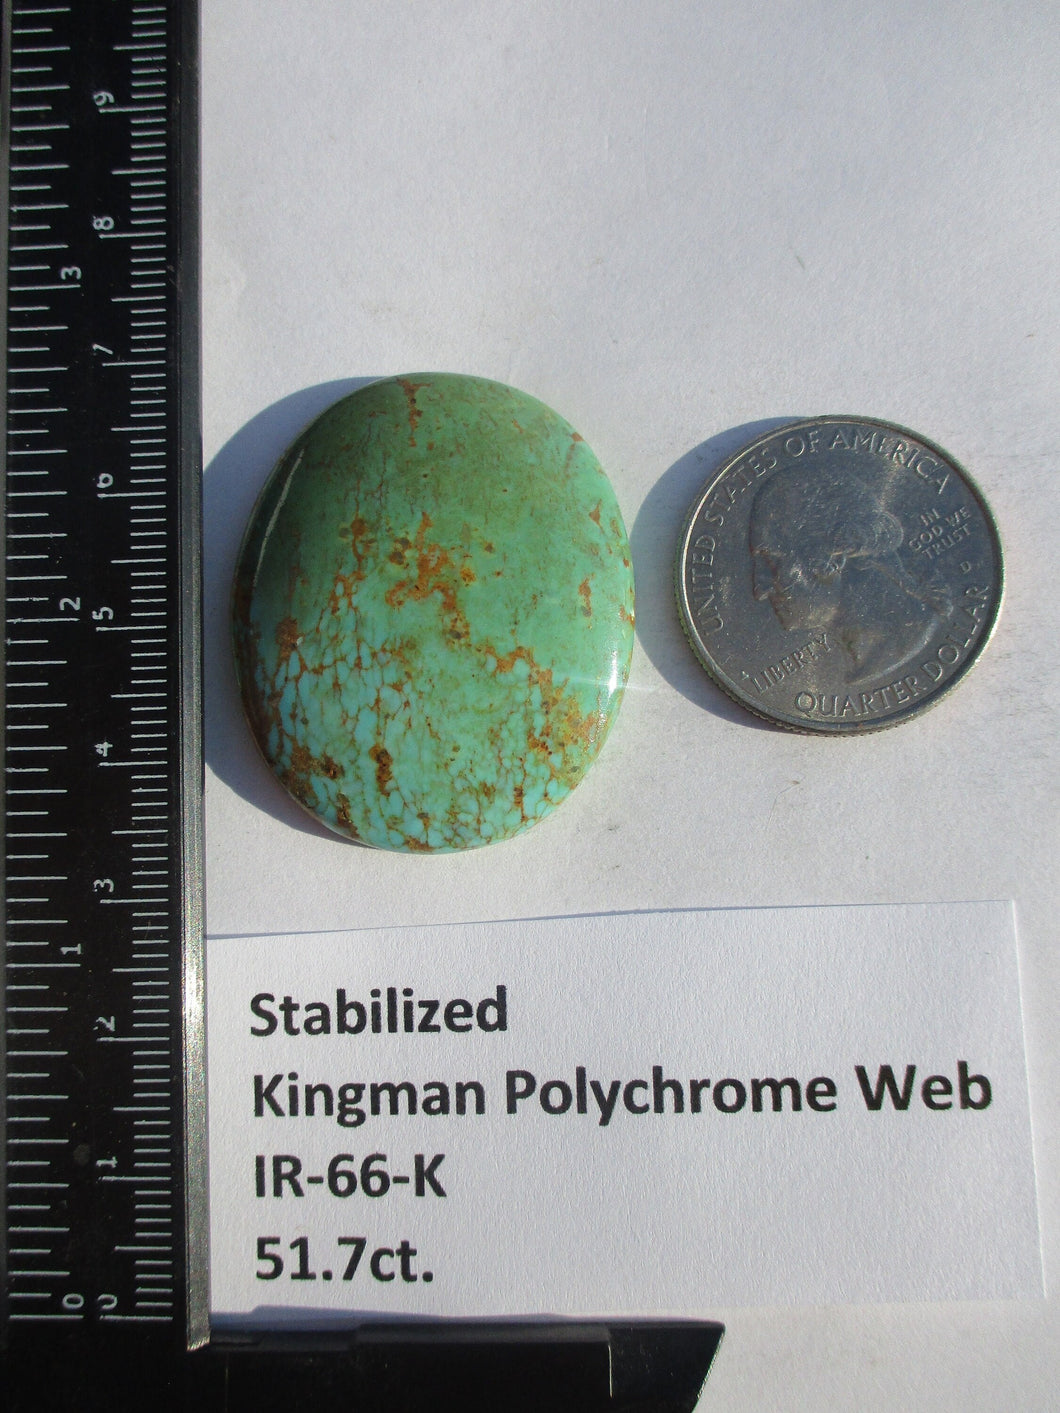 51.7 ct (37x31x7 mm) Stabilized Kingman Polychrome Web Turquoise Cabochon Gemstone, IR 66